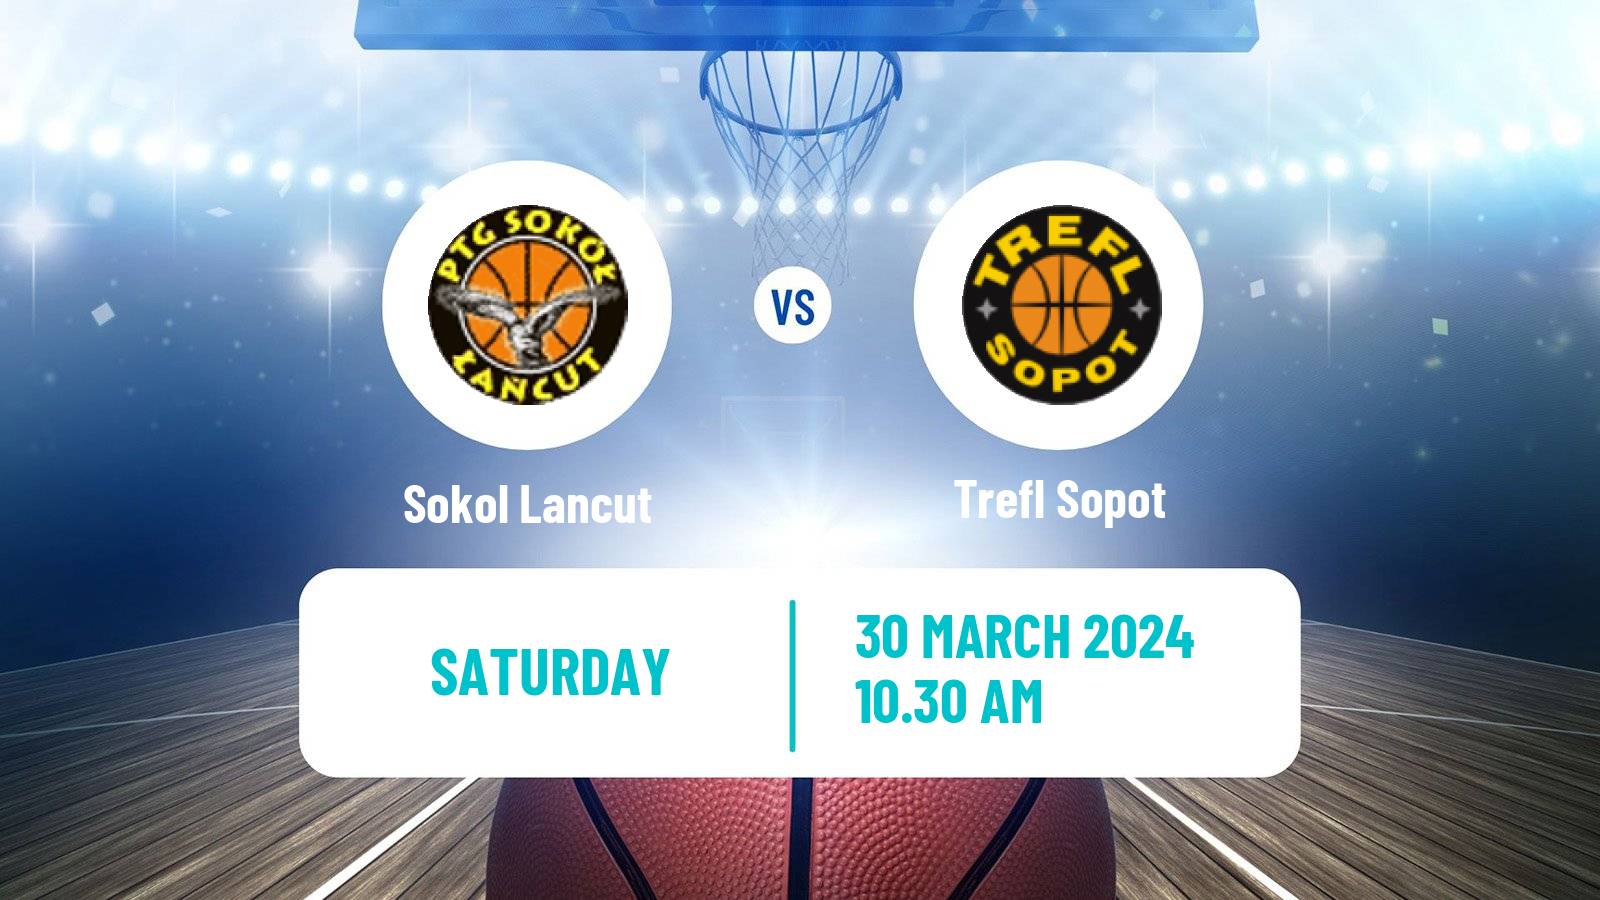 Basketball Polish Basket Liga Sokol Lancut - Trefl Sopot